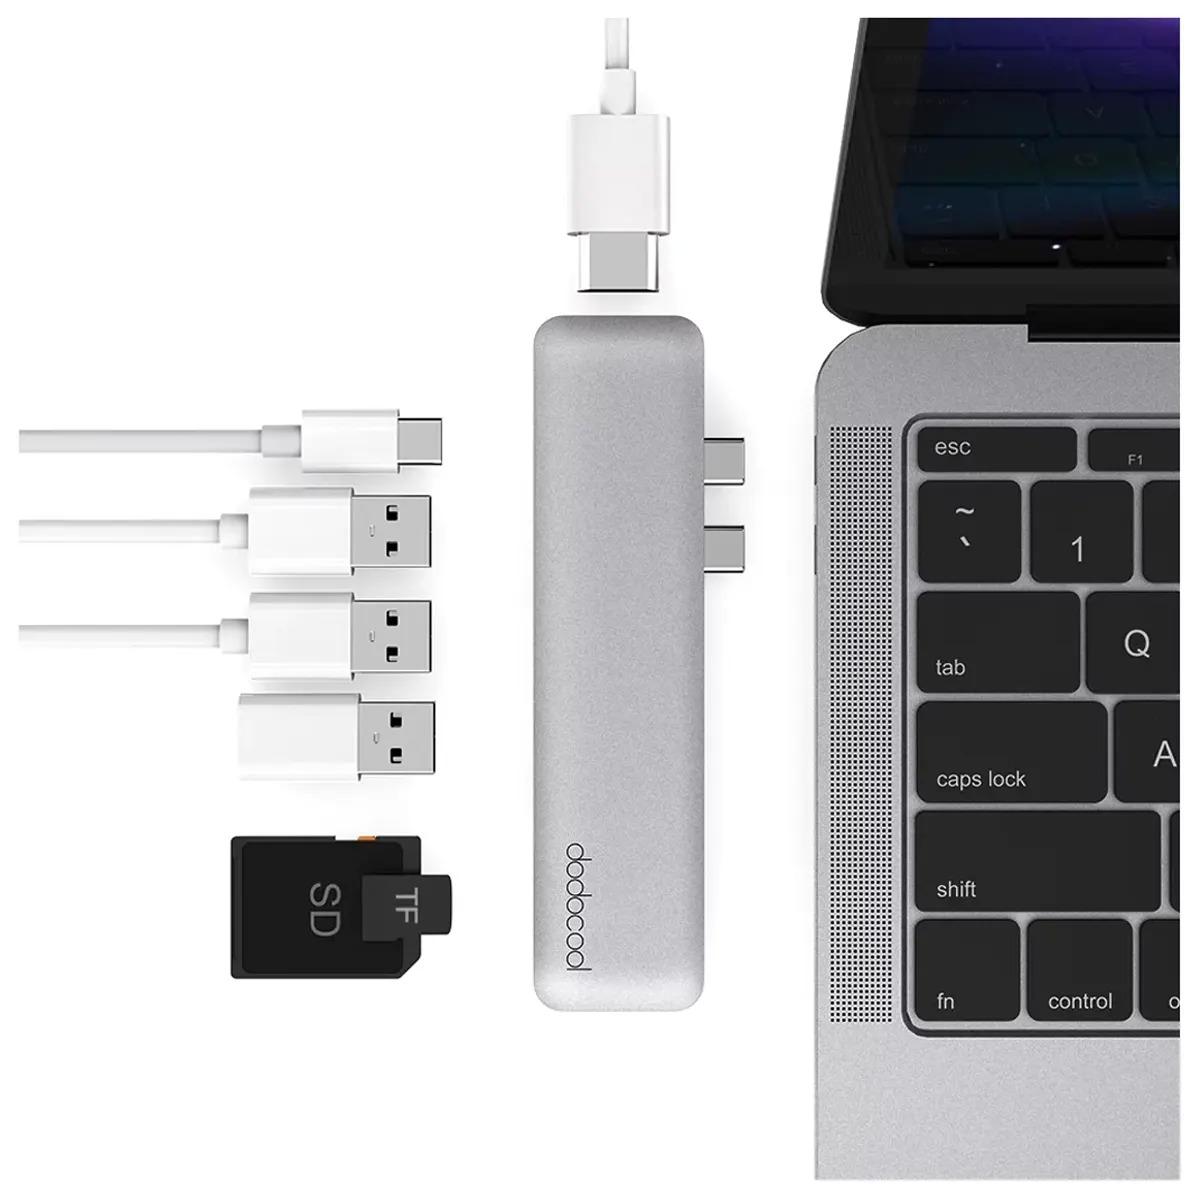 MacBook Pro 7-in-1 Aluminum Alloy USB-C Hub for $9.99